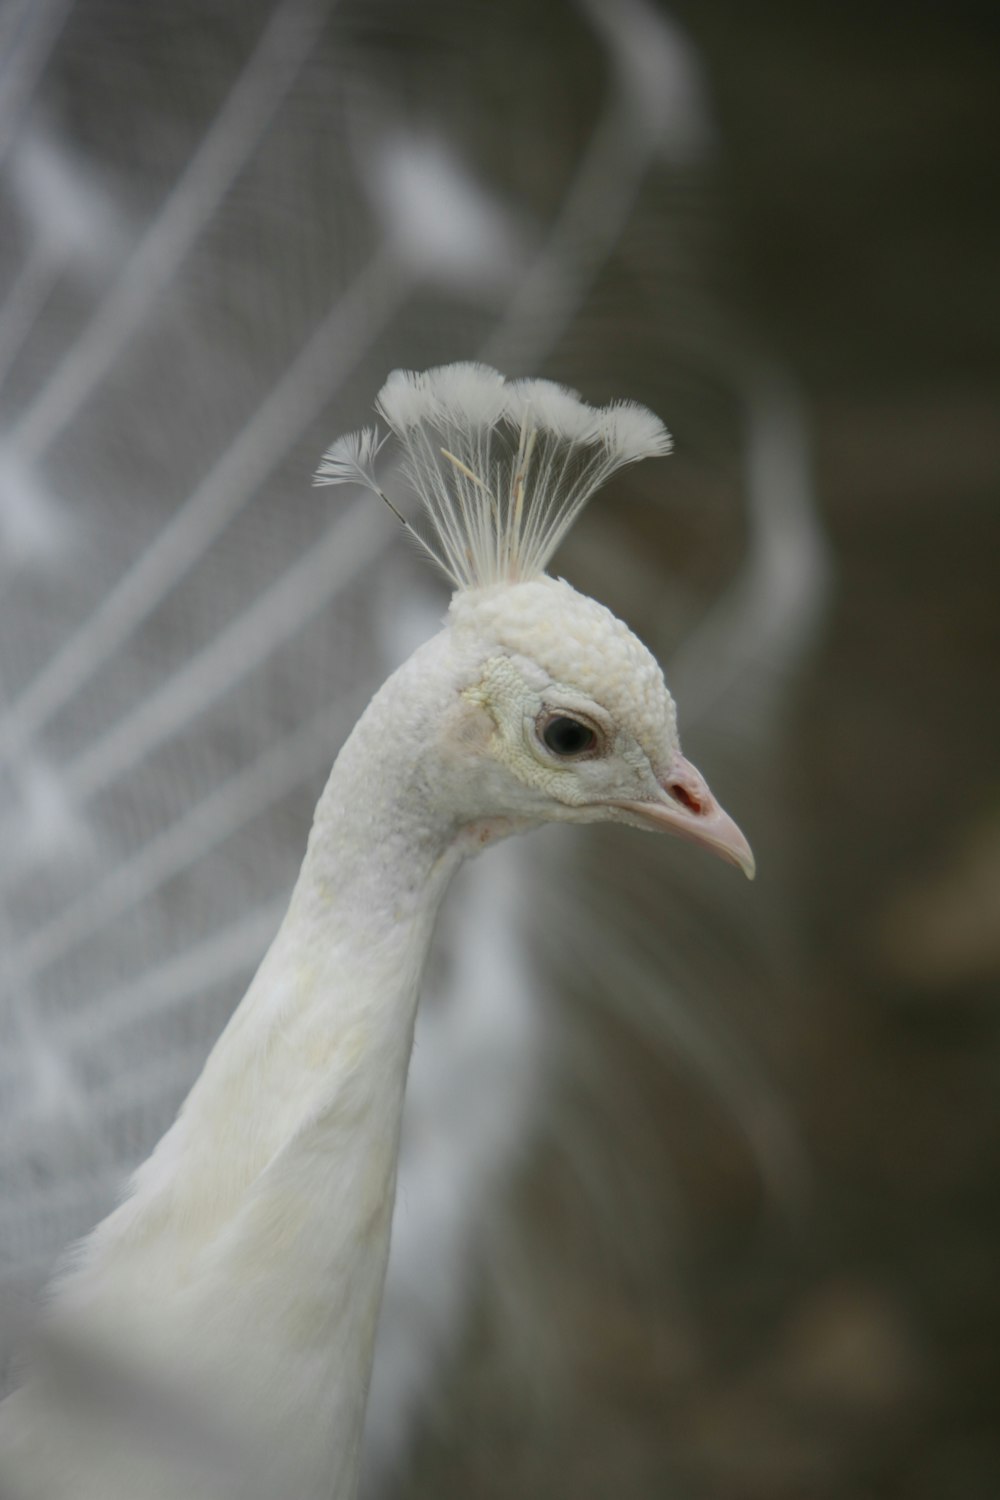 a white bird with a long neck